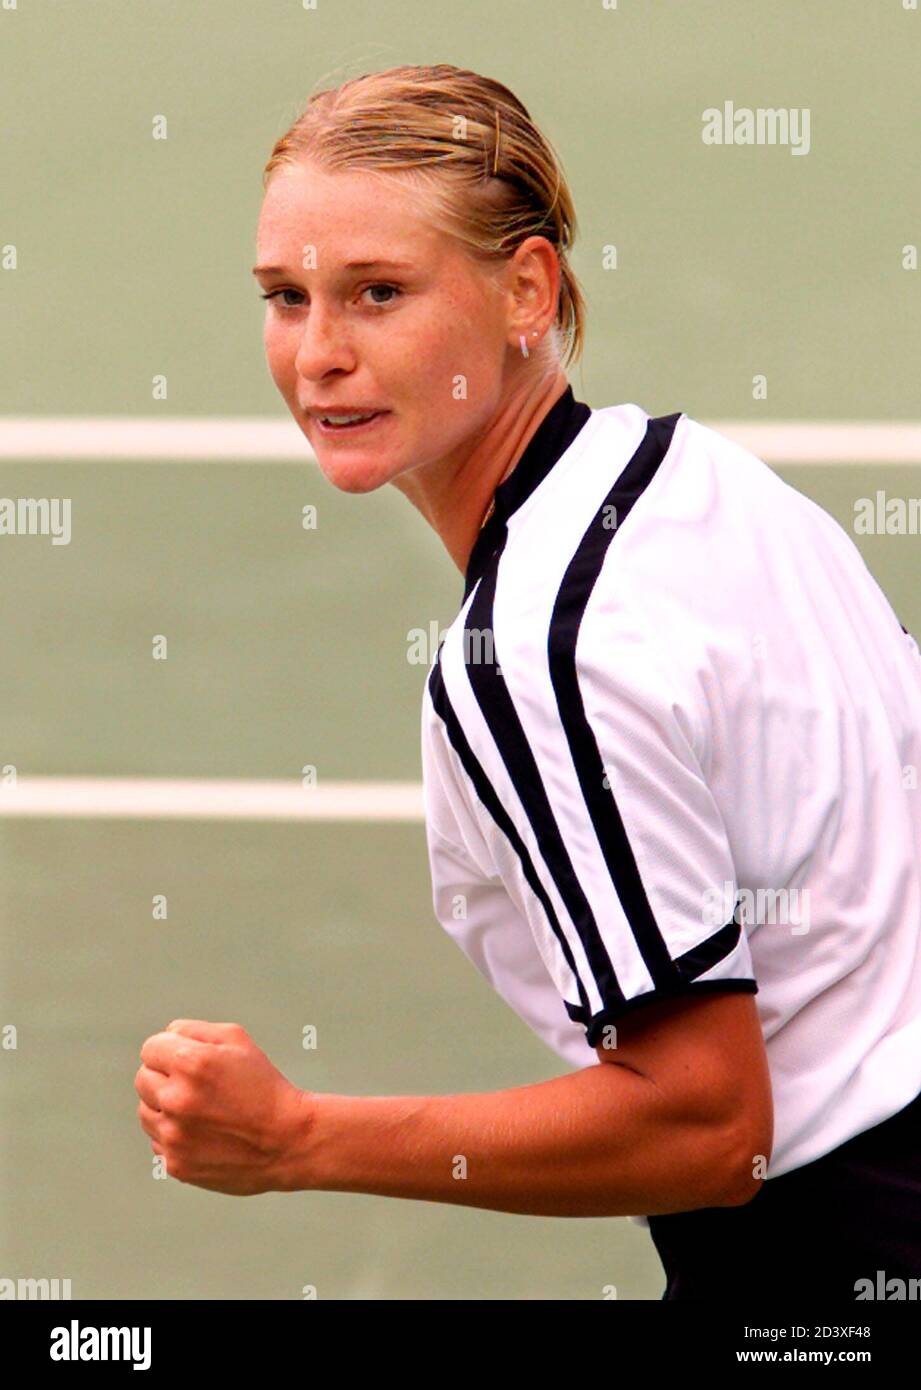 Barbara Schett aus Österreich feiert ihren Sieg über Julie Halard-Decigus  aus Frankreich im dritten olympischen Lauf am 23. September 2000. Schett  gewann das Spiel 2-6 6-2 mit 6:1. KL/HB Stockfotografie - Alamy